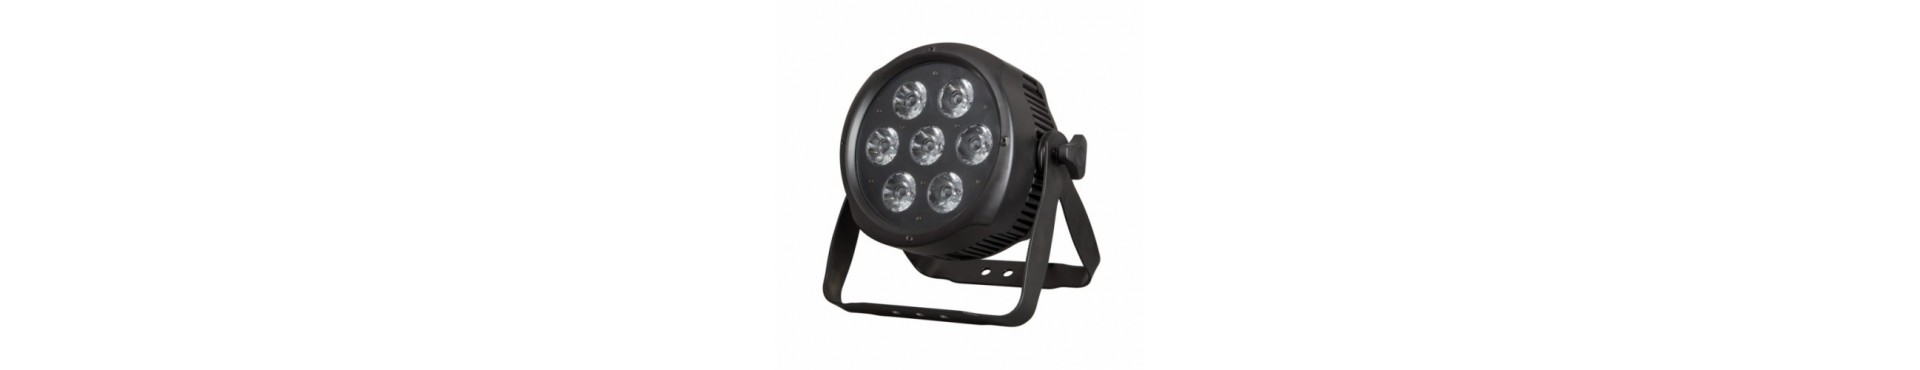 Kvalitets DMX LED lampe, med styring